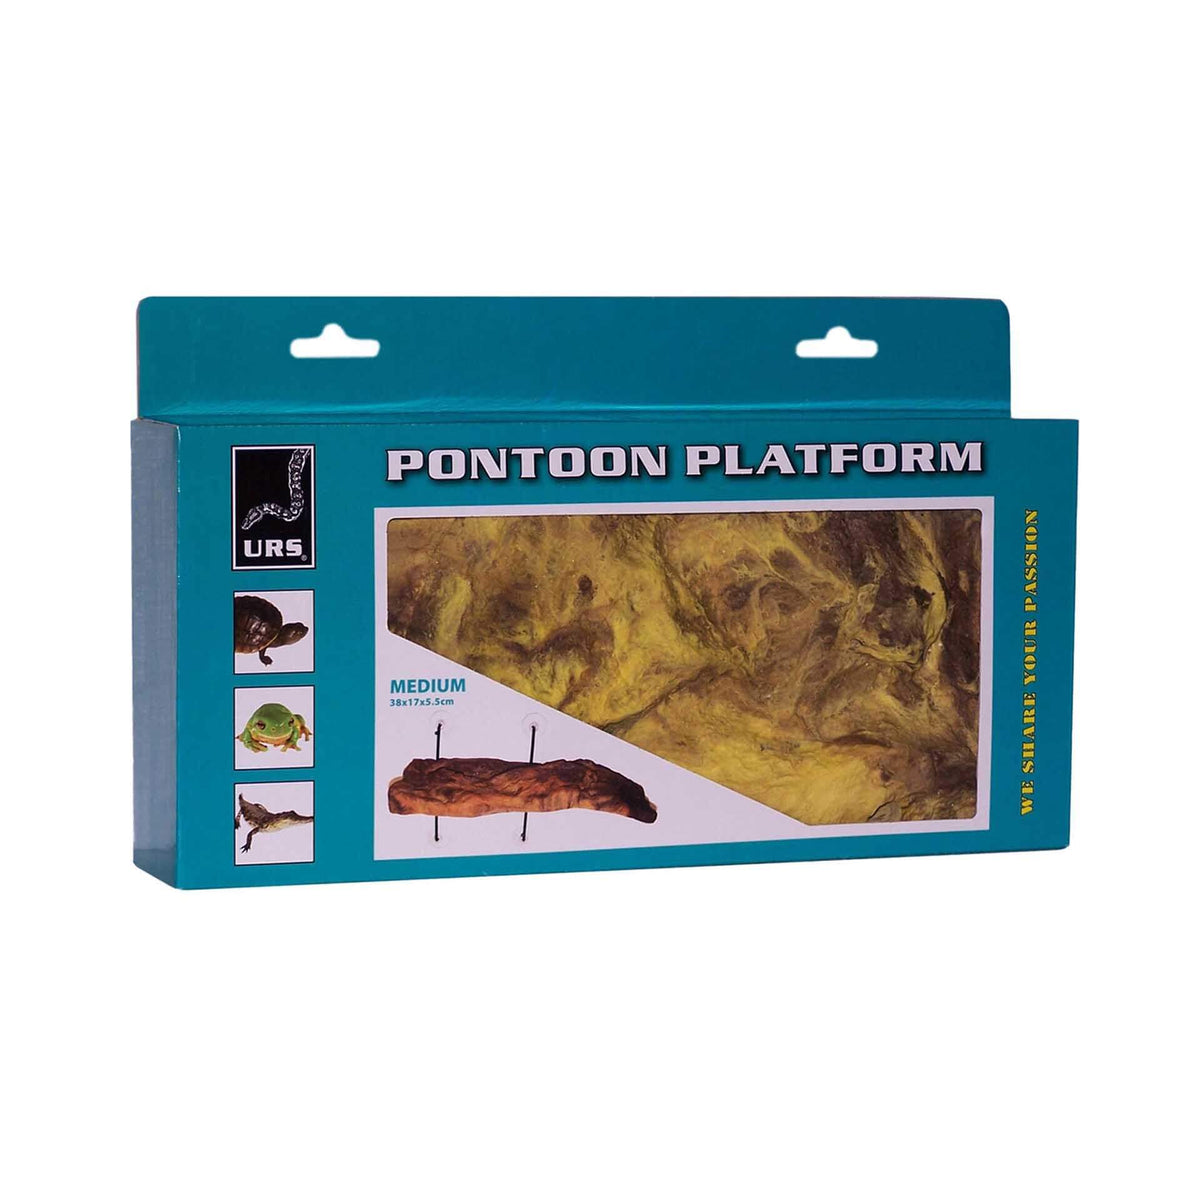 Pontoon Platform - Medium 38 x 17 x 5.5cm